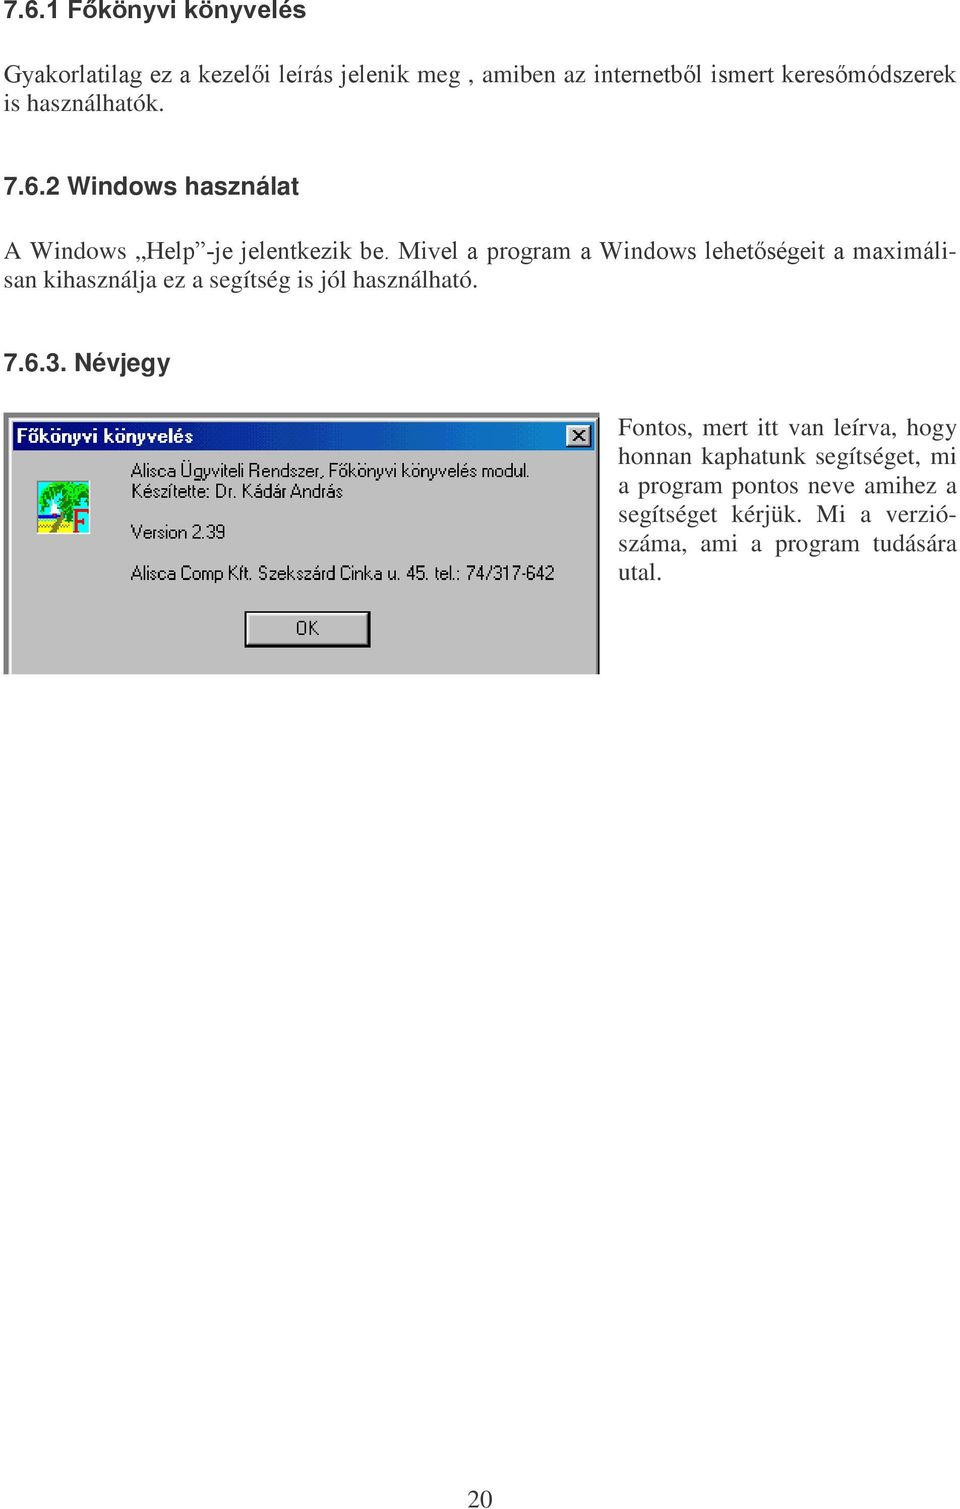 2 Windows használat A Windows +HOS MHMHOHQWNH]LNEH0LYHODSURJUDPD:LQGRZVOHKHWVpJHLWDPD[LPiOisan kihasználja ez